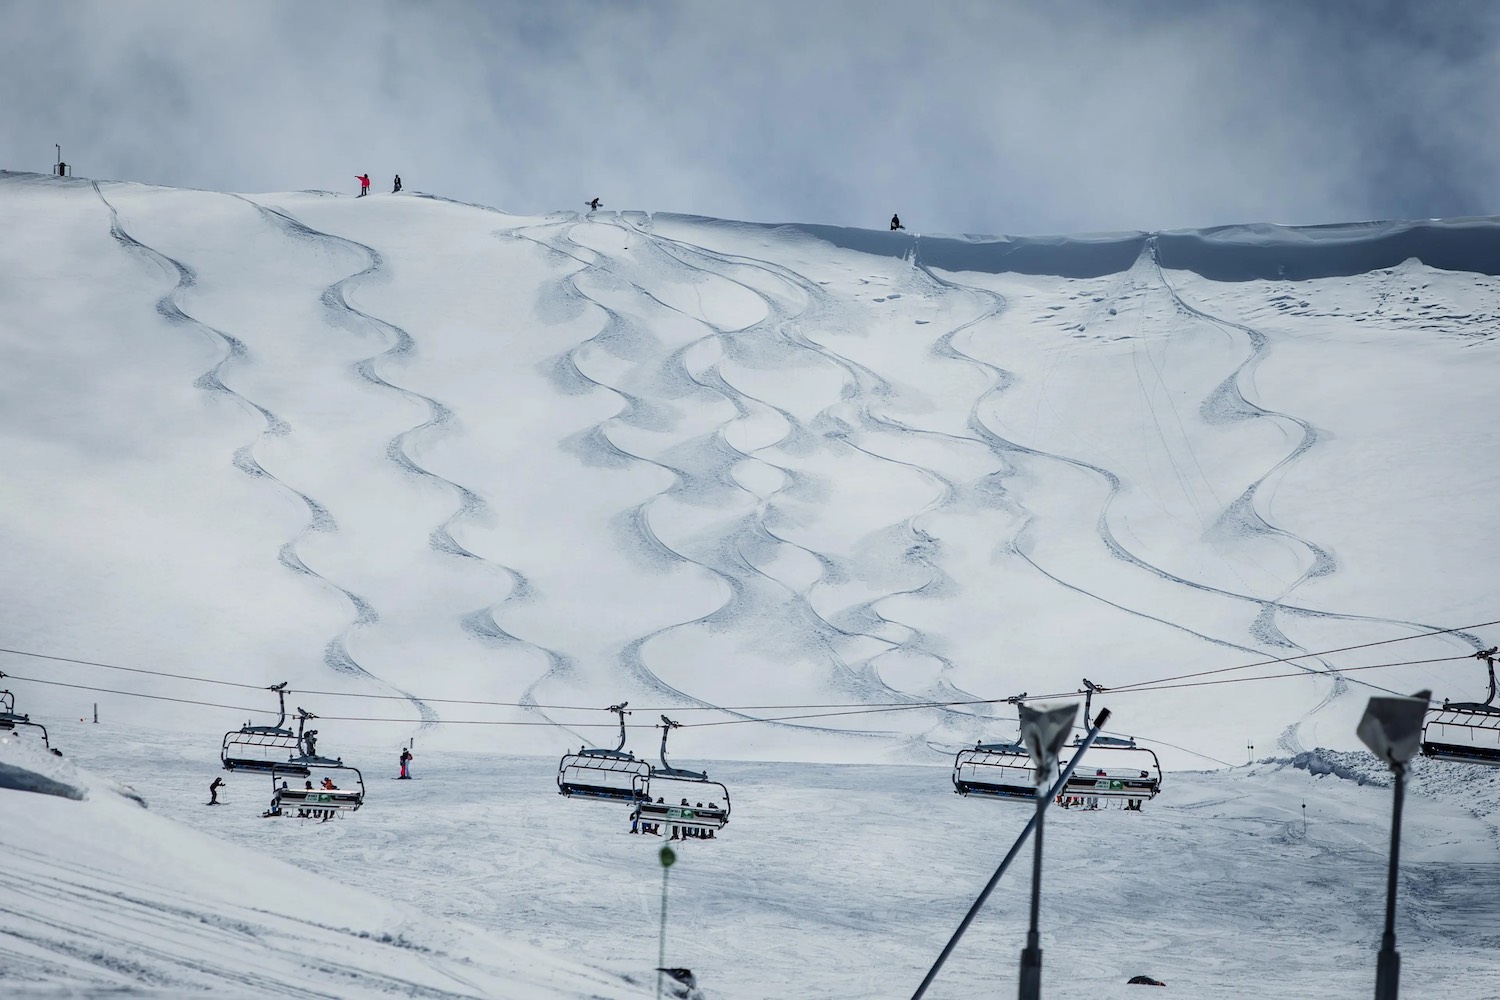 Sierra Nevada cierra la temporada de esquí con casi 1,2 millones de usuarios y 149 días abierta